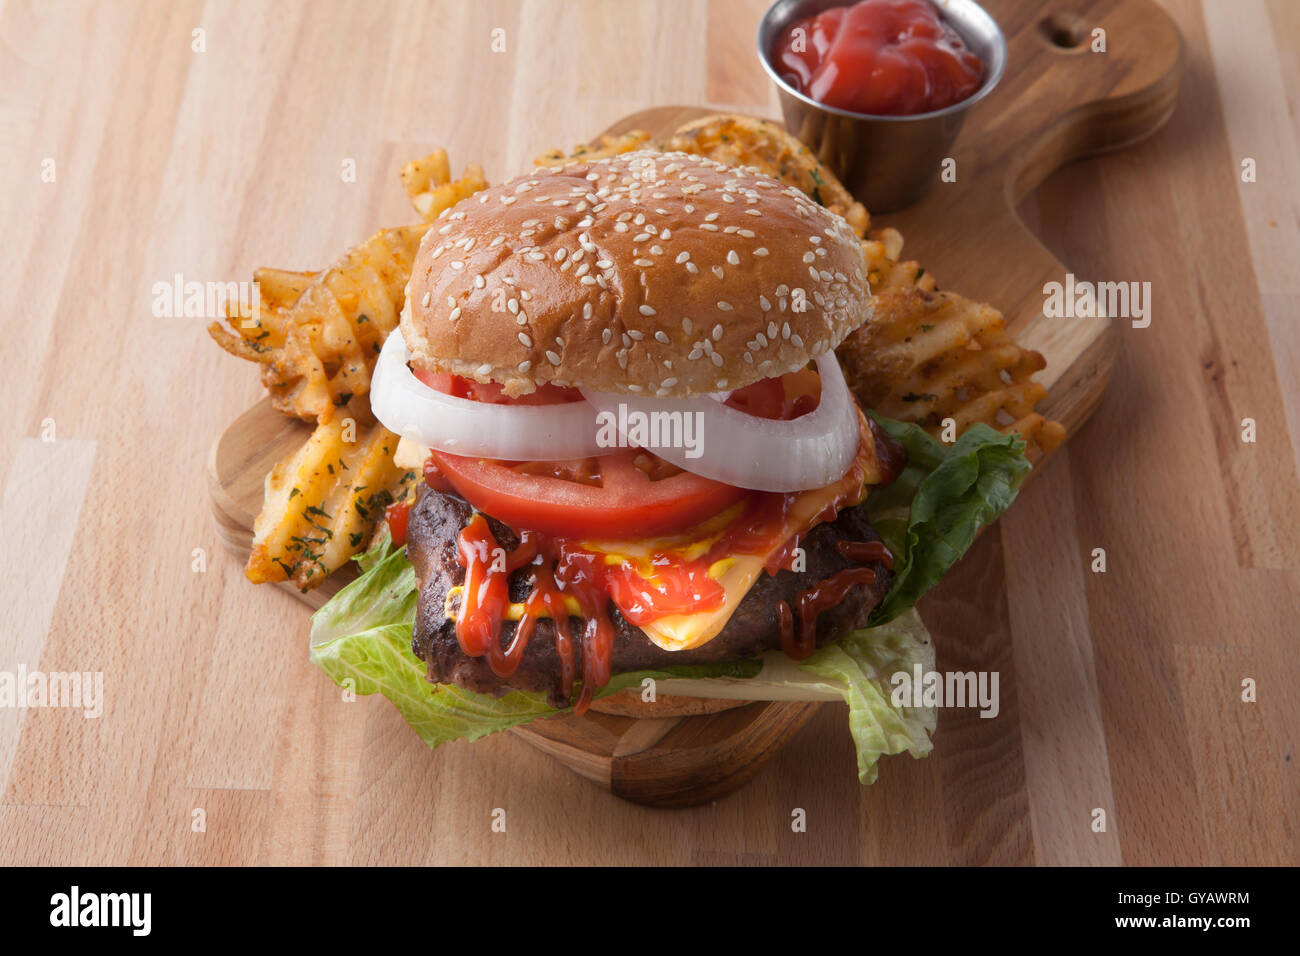 Hamburger and beer Stock Photo